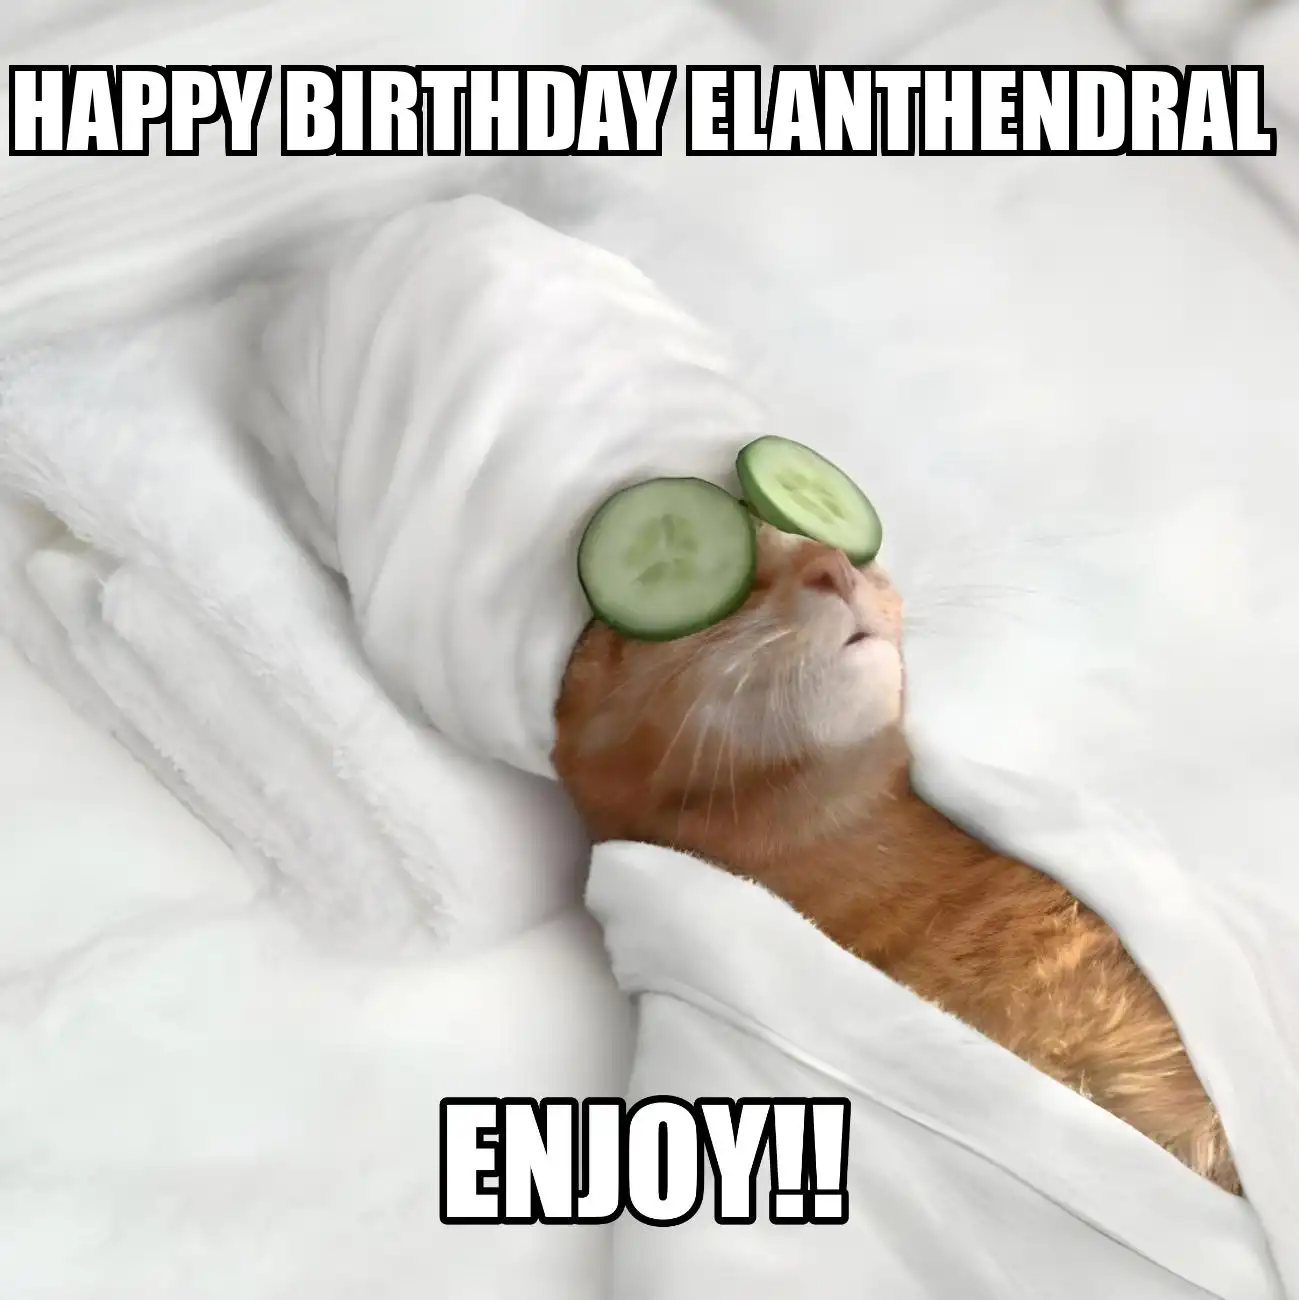 Happy Birthday Elanthendral Enjoy Cat Meme